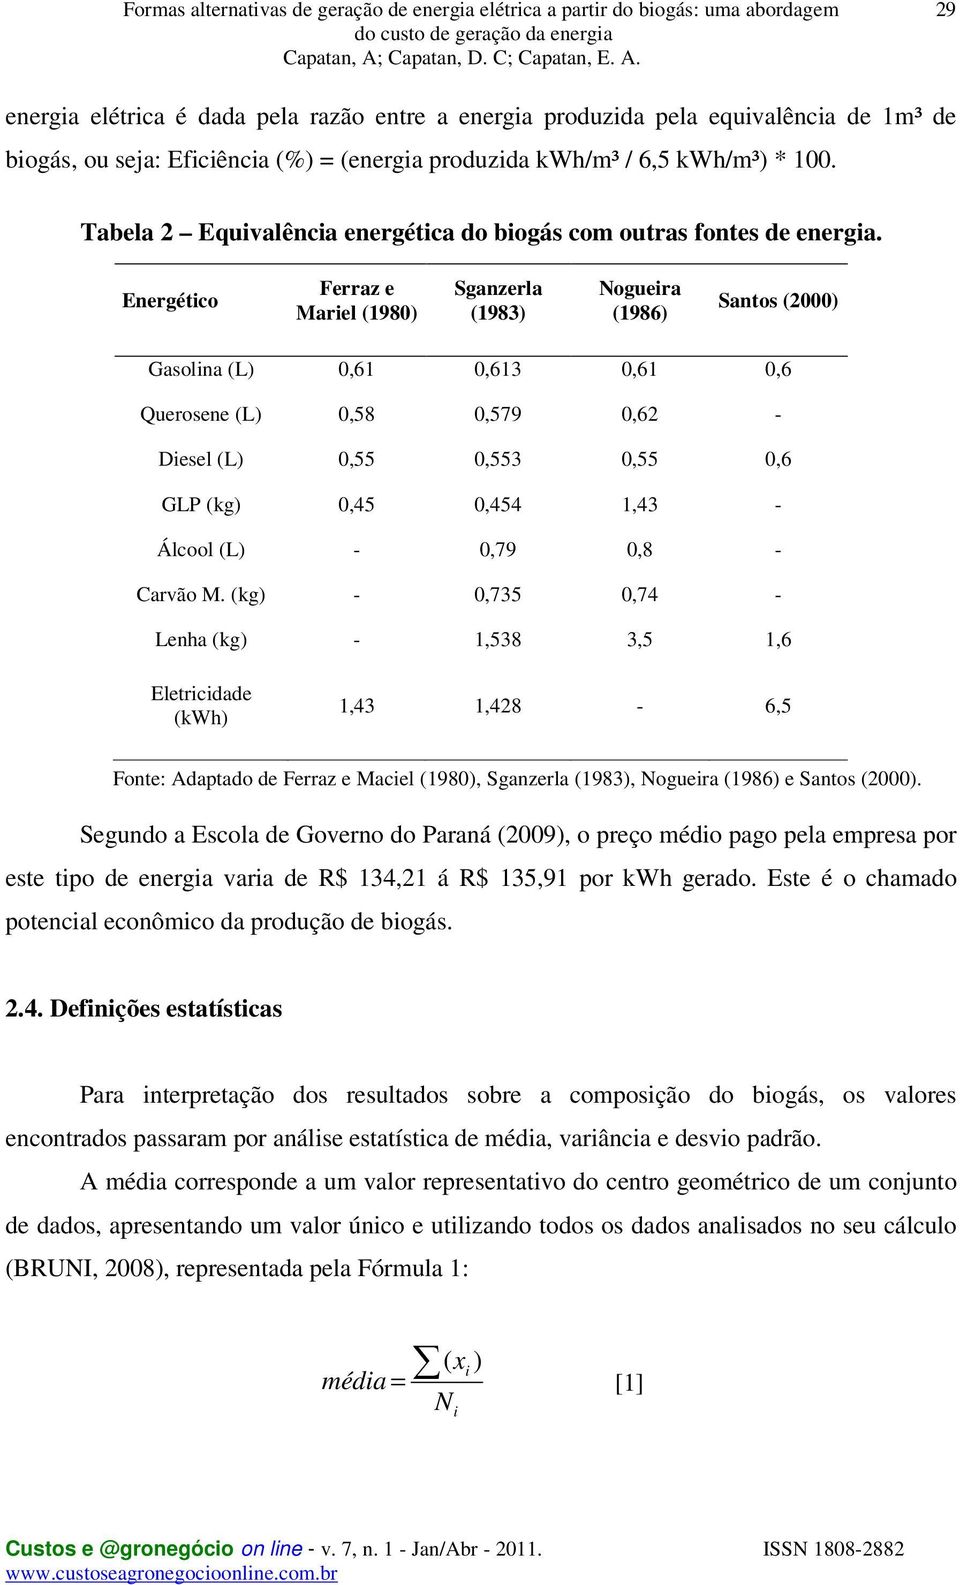 Energético Ferraz e Mariel (1980) Sganzerla (1983) Nogueira (1986) Santos (2000) Gasolina (L) 0,61 0,613 0,61 0,6 Querosene (L) 0,58 0,579 0,62 - Diesel (L) 0,55 0,553 0,55 0,6 GLP (kg) 0,45 0,454